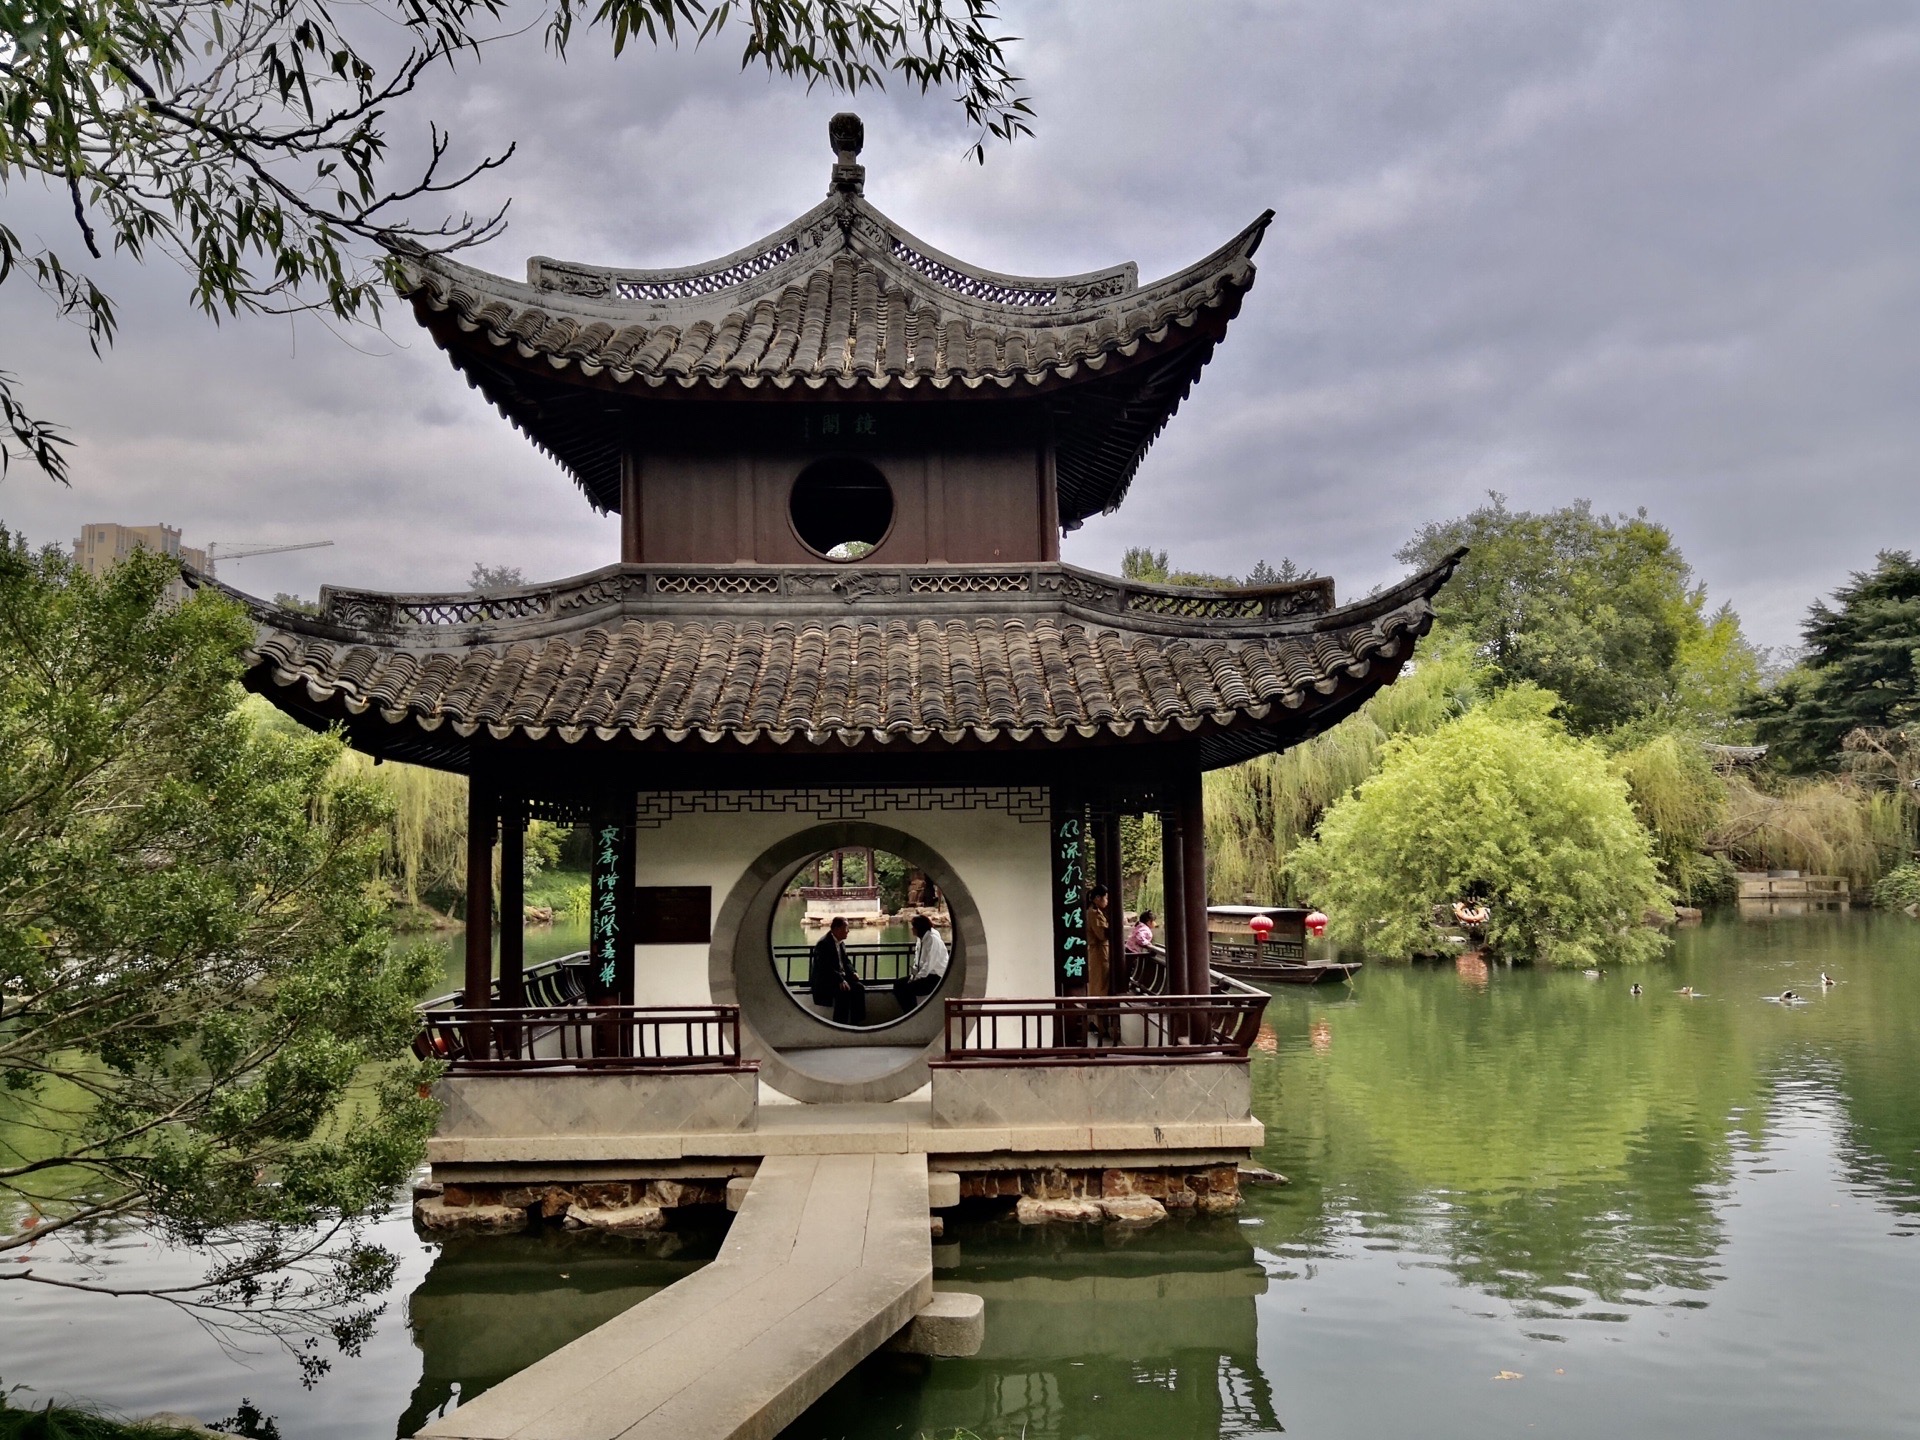 【携程攻略】如皋水绘园景点,江苏如皋作为一个值得细细品味的小城